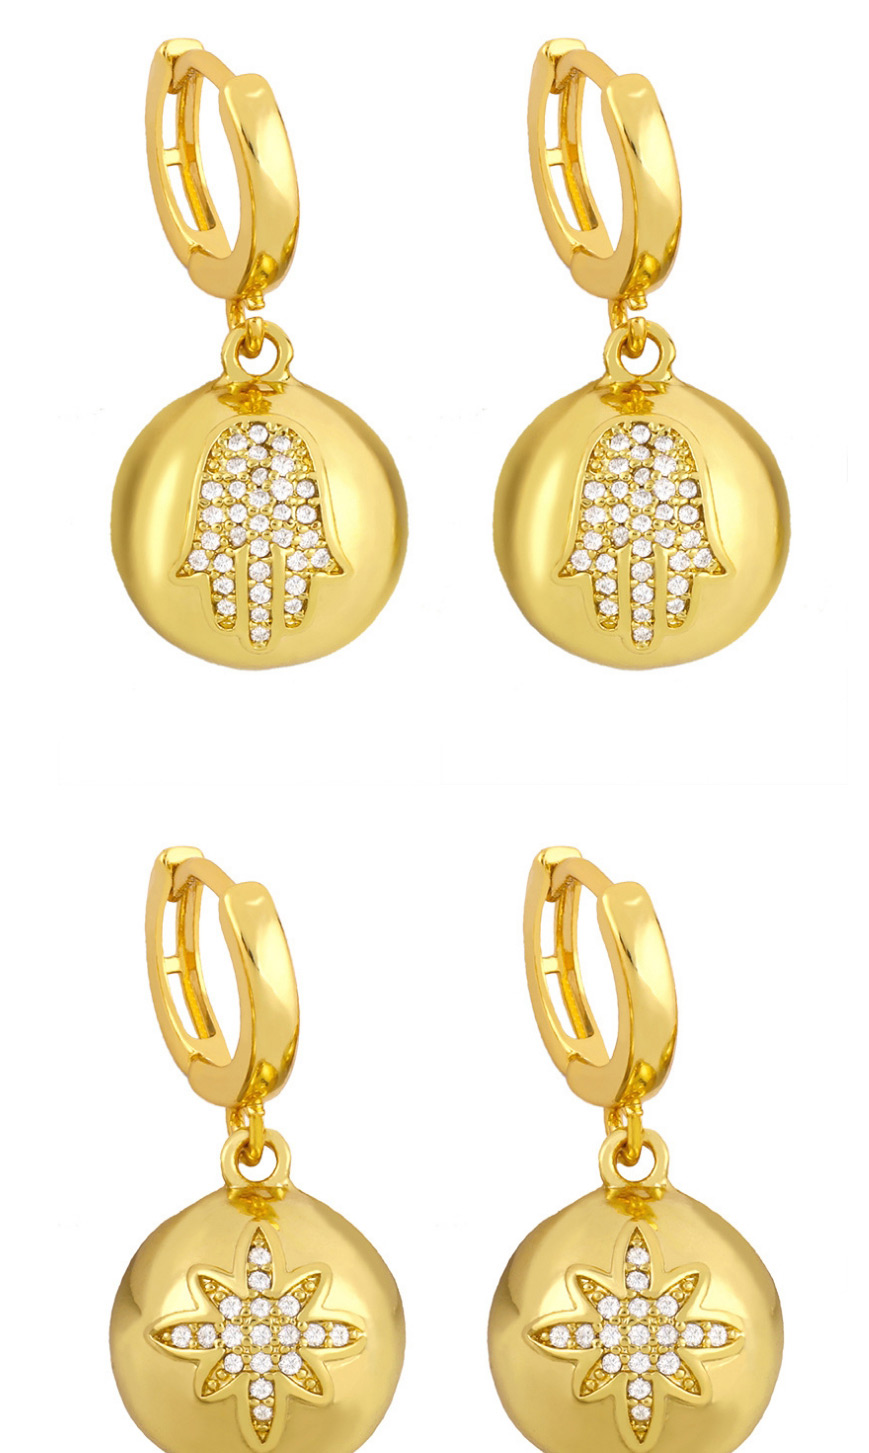 Fashion Palm Stars Moon Balls Diamonds Butterfly Love Heart Geometric Earrings,Earrings